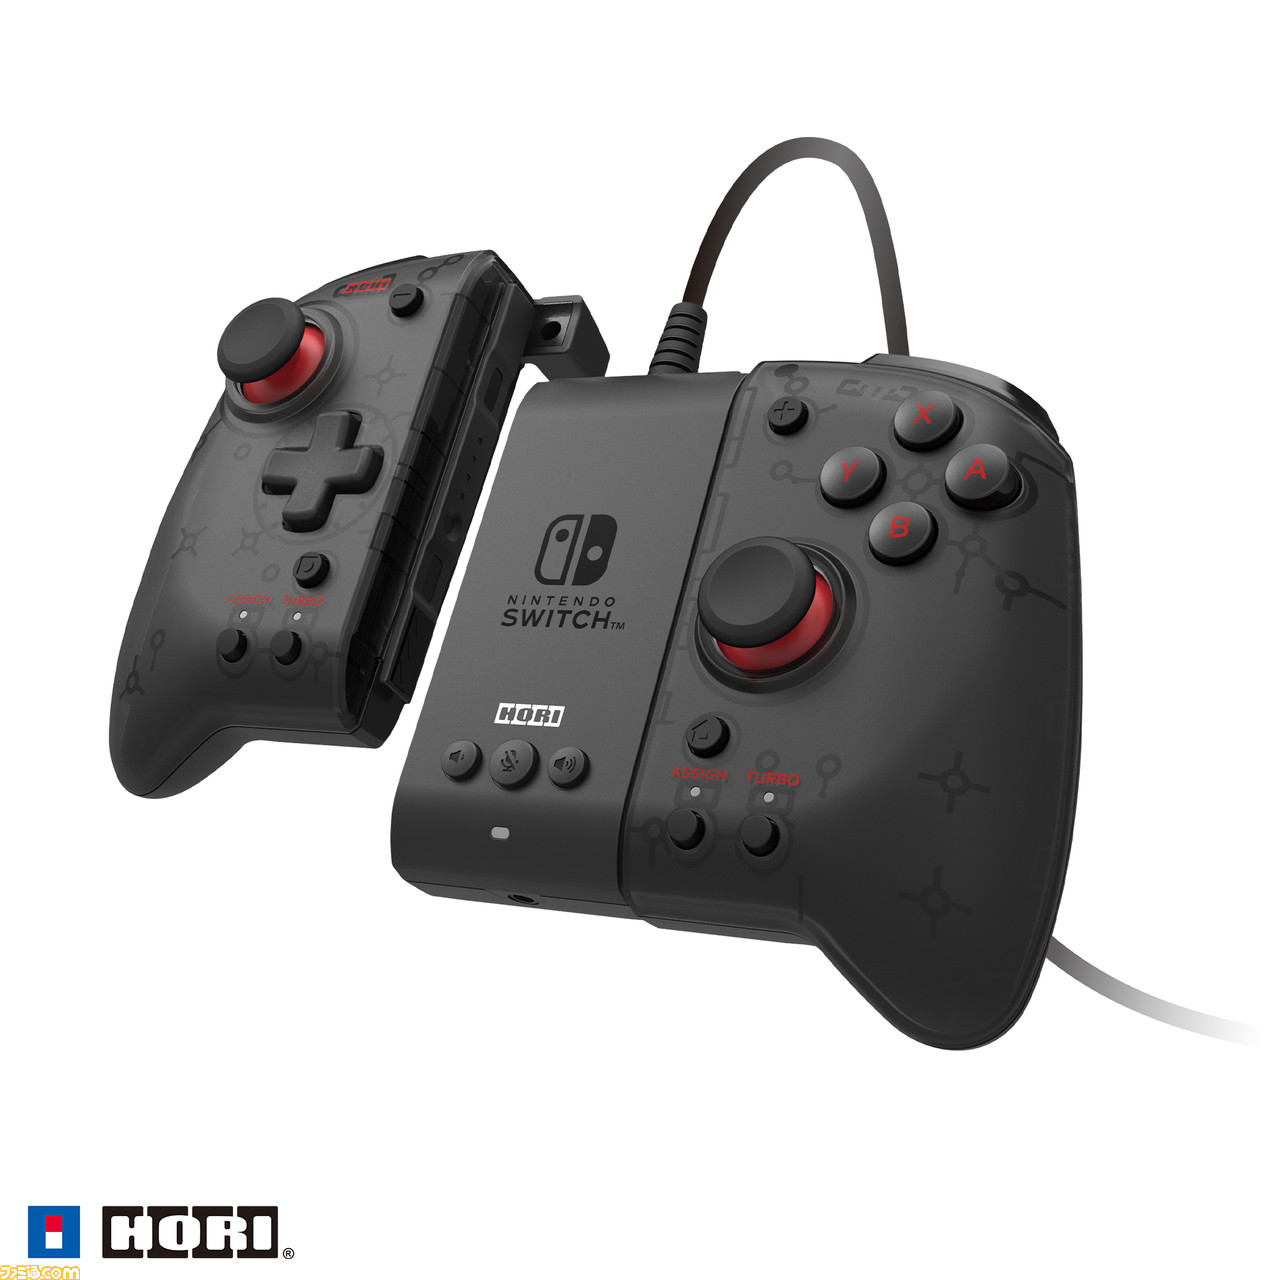 グリップコントローラー 専用アタッチメントセット For Nintendo Switch Pc が12月に発売 有線コントローラーとしてtvモードやpcでも使用可能に ゲーム エンタメ最新情報のファミ通 Com